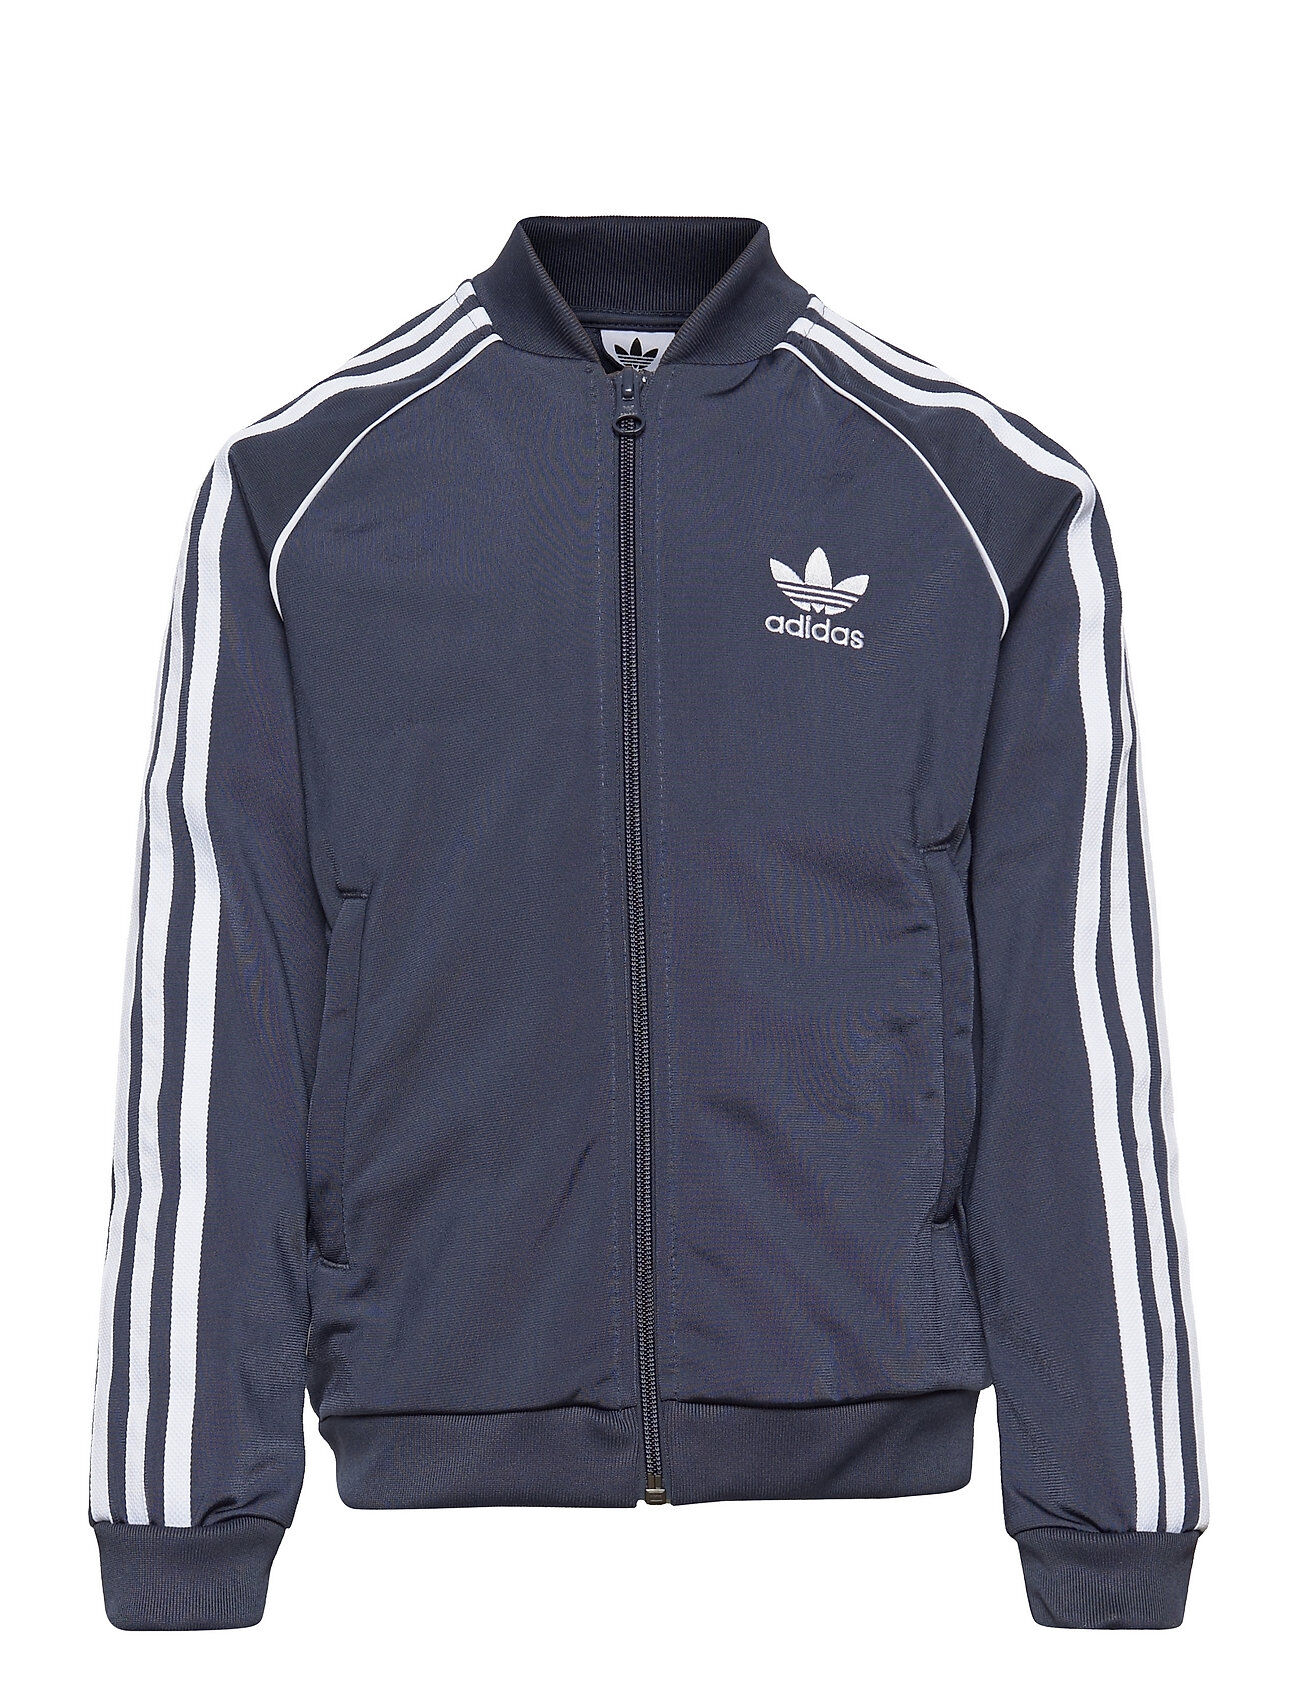 adidas Originals Adicolor Superstar Sst Track Jacket Sweat-shirt Genser Blå Adidas Originals